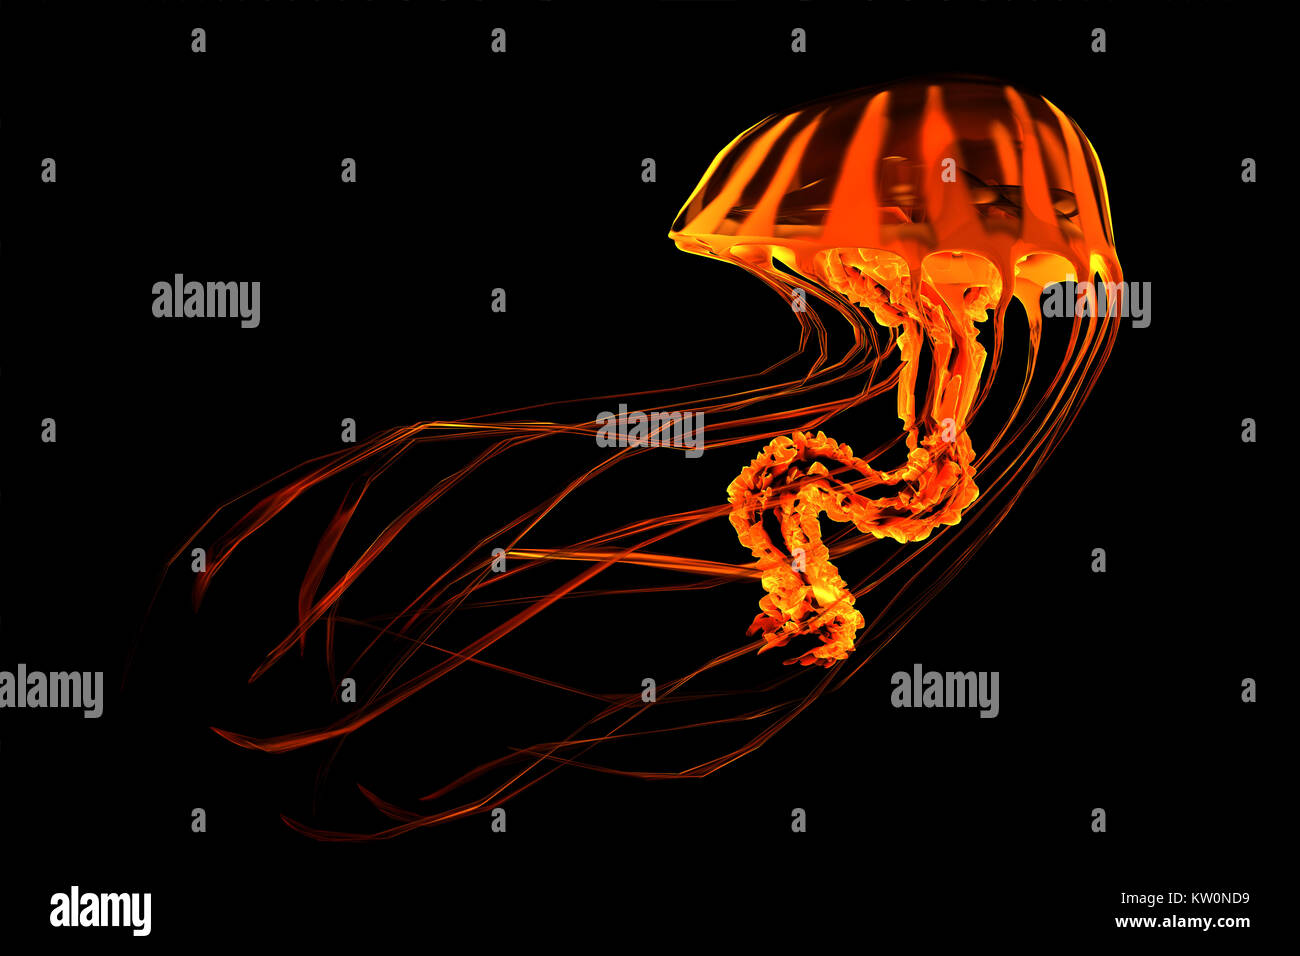 Rayé Jaune Rouge - méduses méduses l'océan recherche les poissons proies et utilise ses tentacules venimeux pour soumettre les animaux elle chasse. Banque D'Images